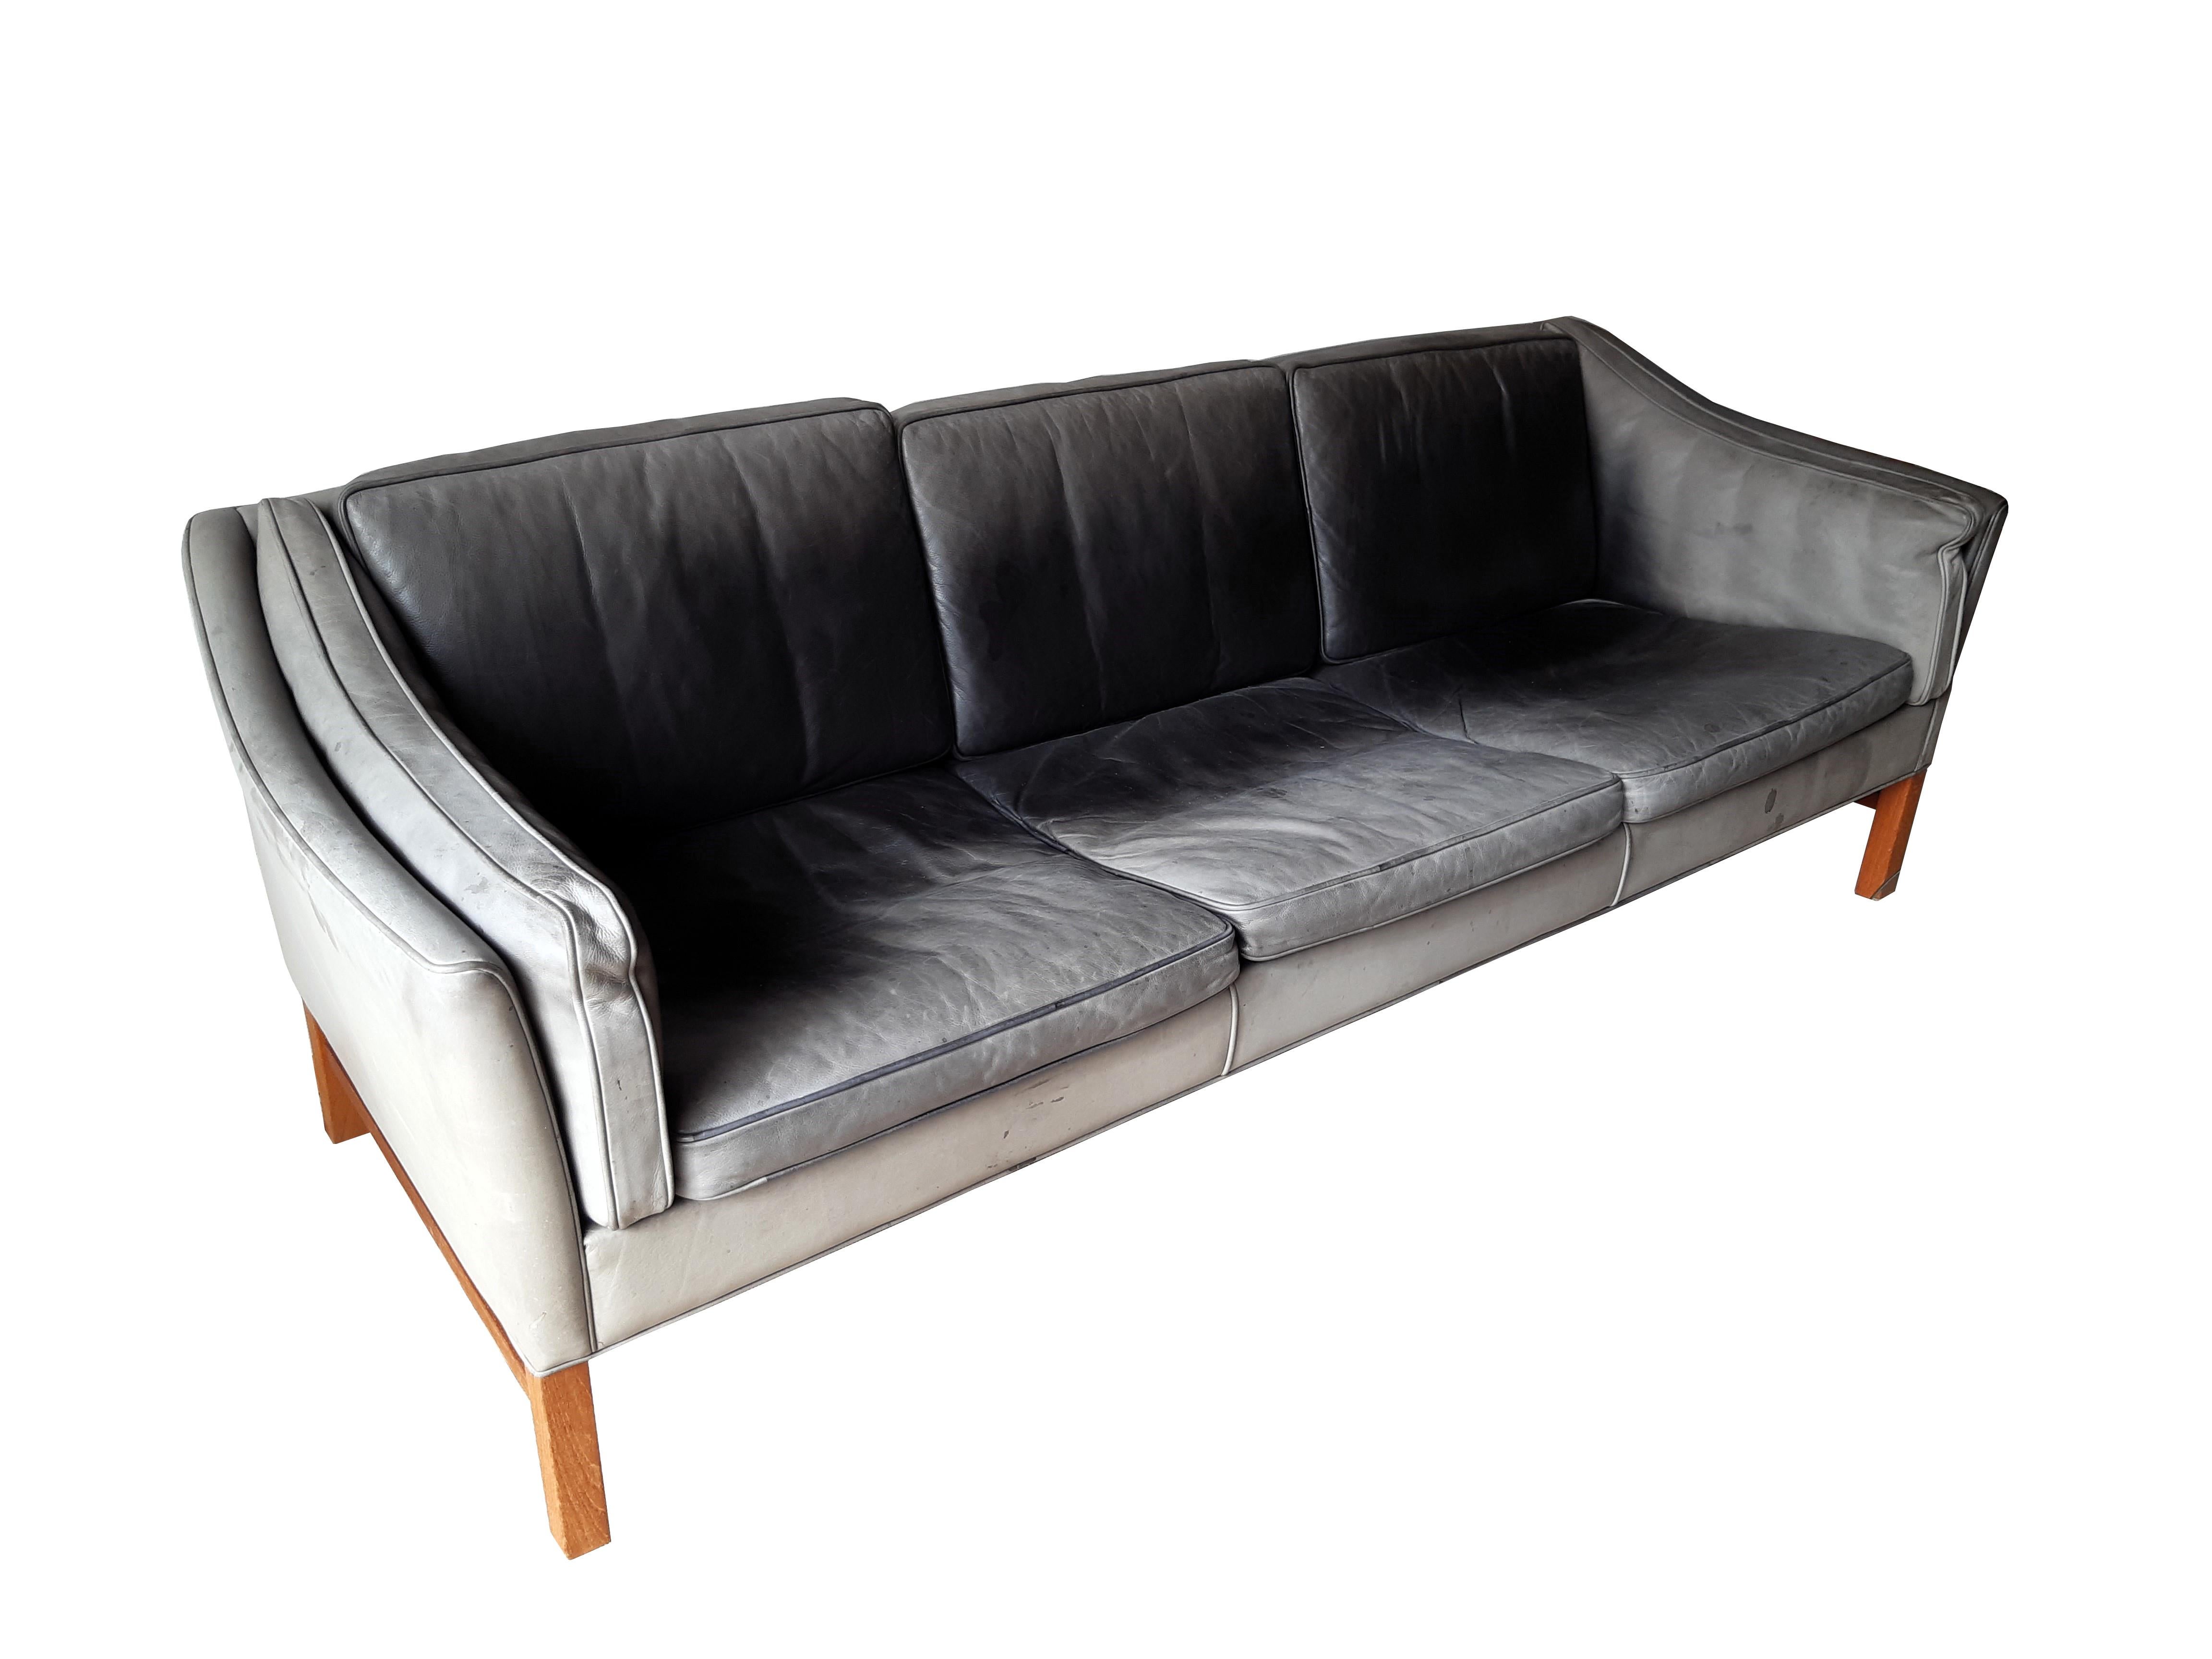 Dänische 3-Sitzer-Ledersofa der 60er Jahre von GRANT. 

Unbeschädigt, das Leder weich und geschmeidig, aber durch Lichteinwirkung ausgeblichen.  Ich empfehle eine professionelle Leder-Neueinfärbung - auch wenn das Sofa auch in diesem Zustand sehr